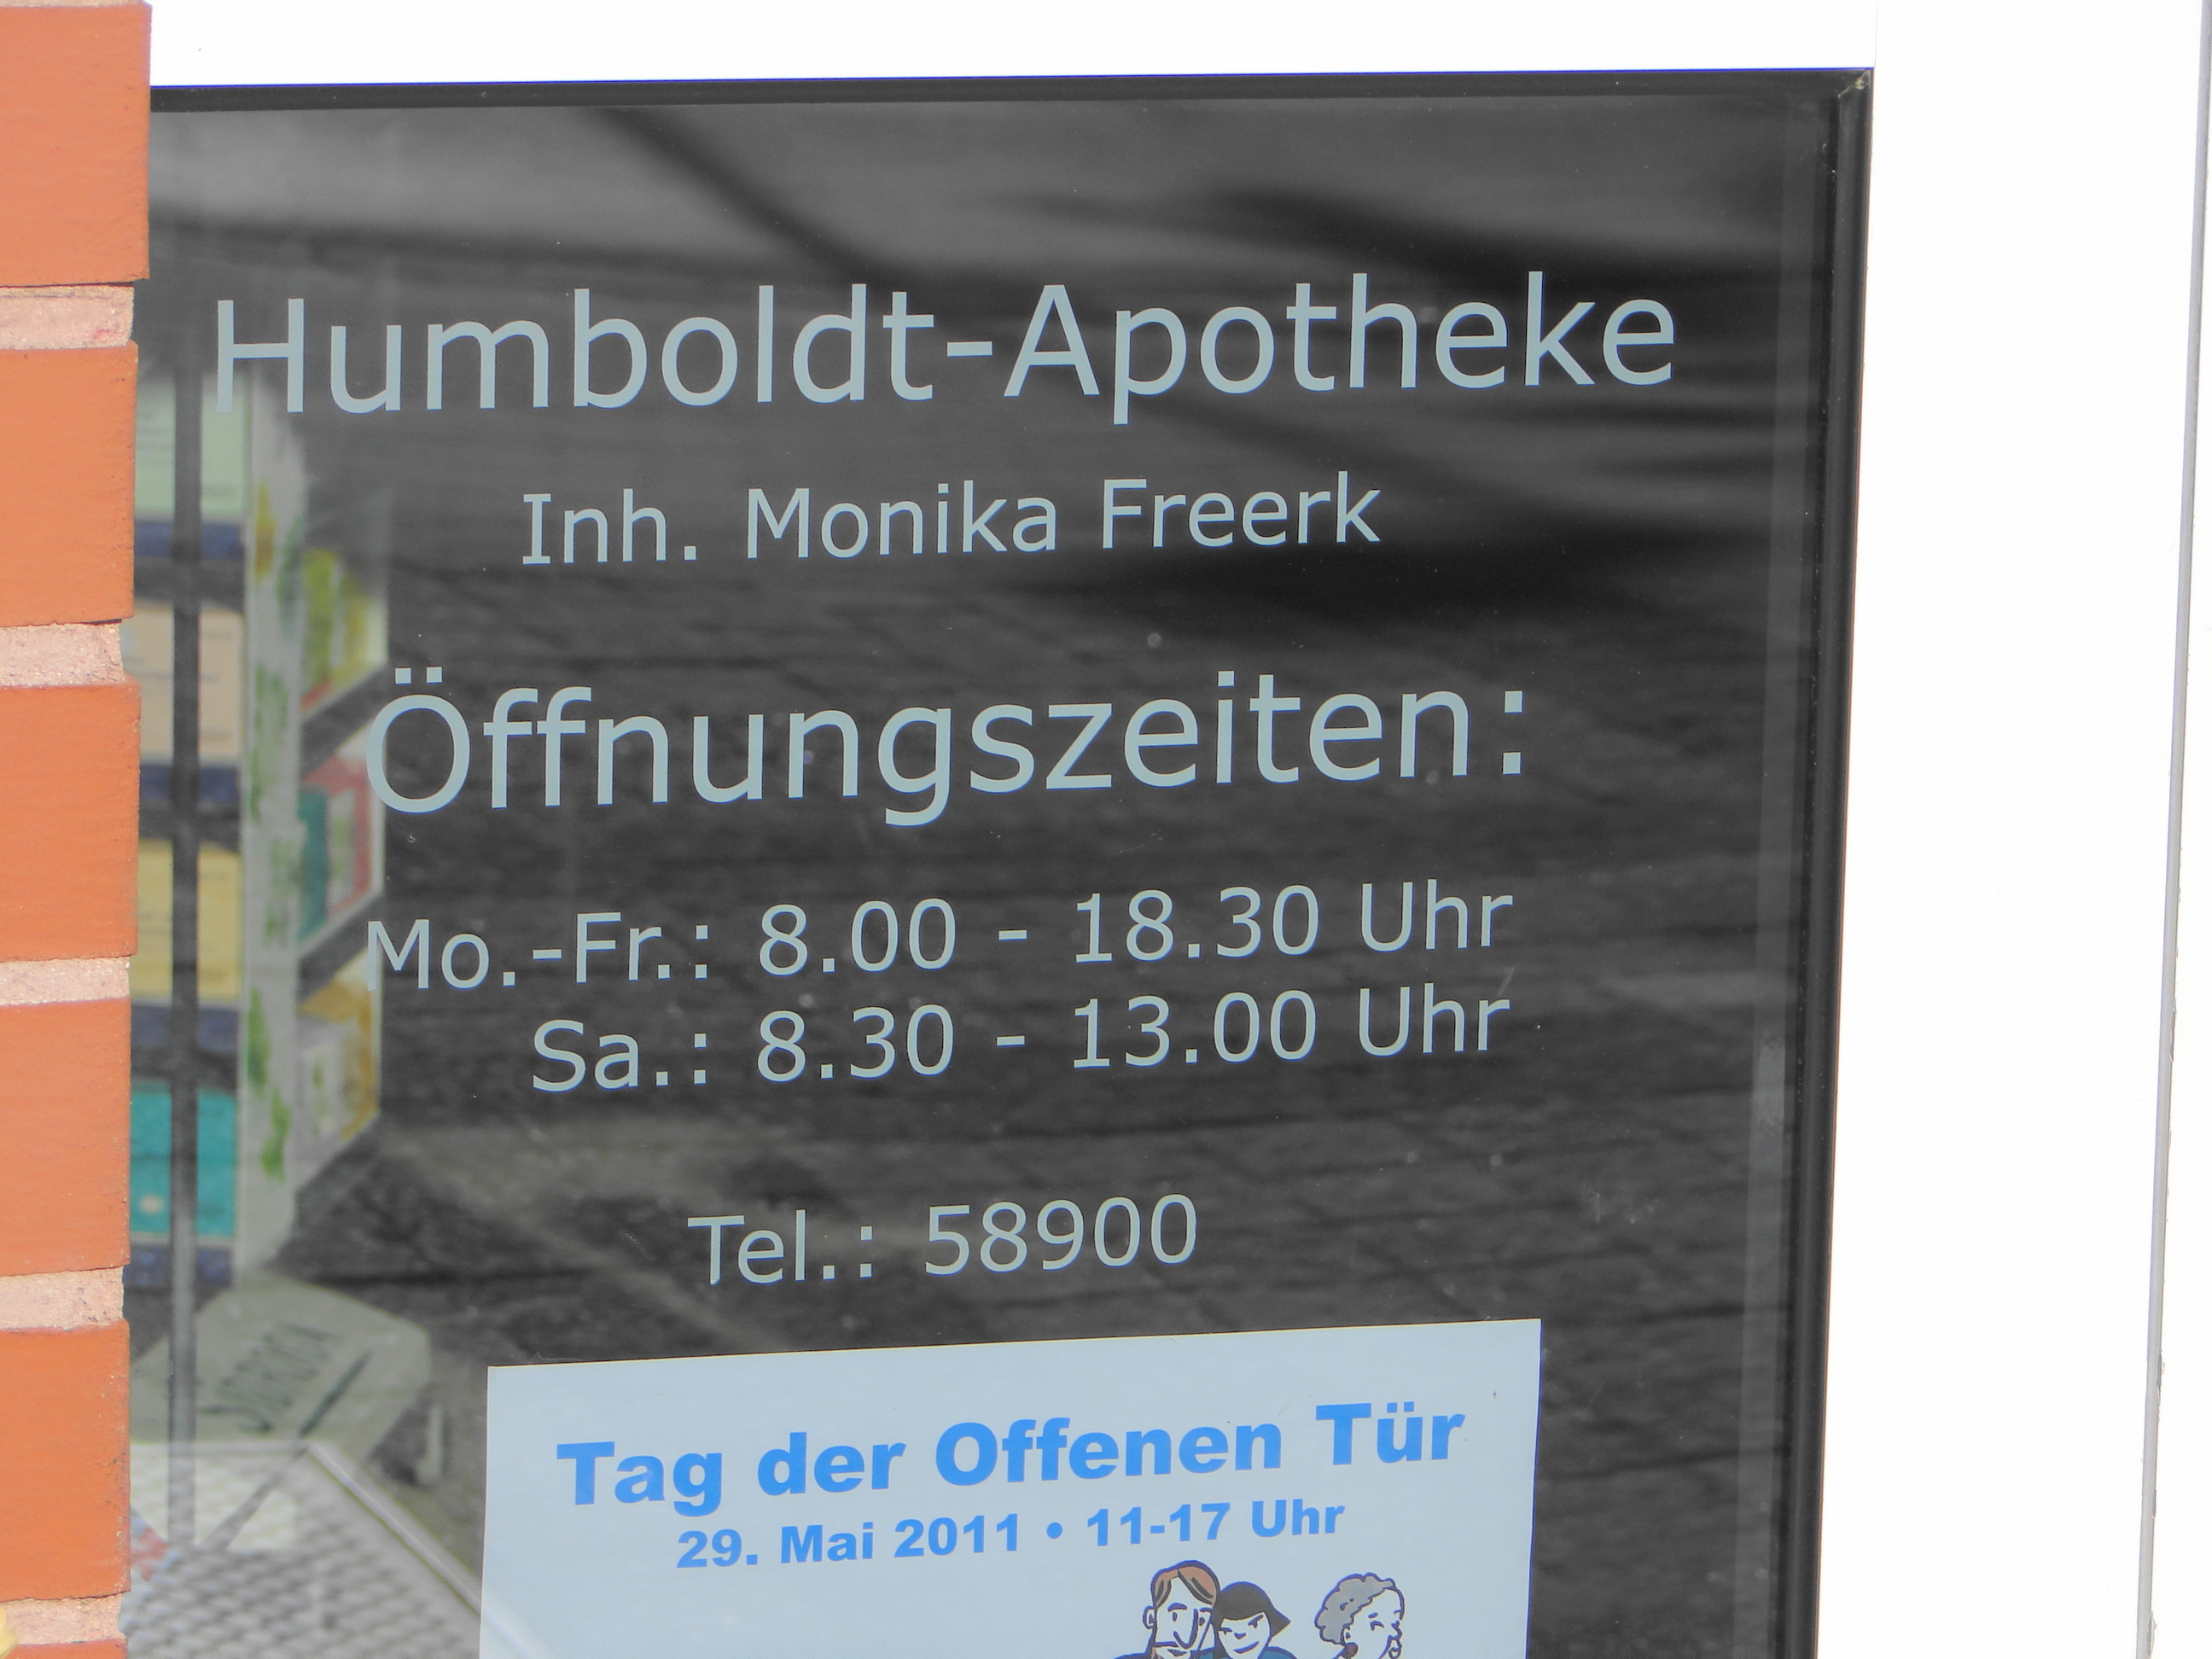 Humboldt Apotheke in der Bühlstr. 44, Öffnungszeiten